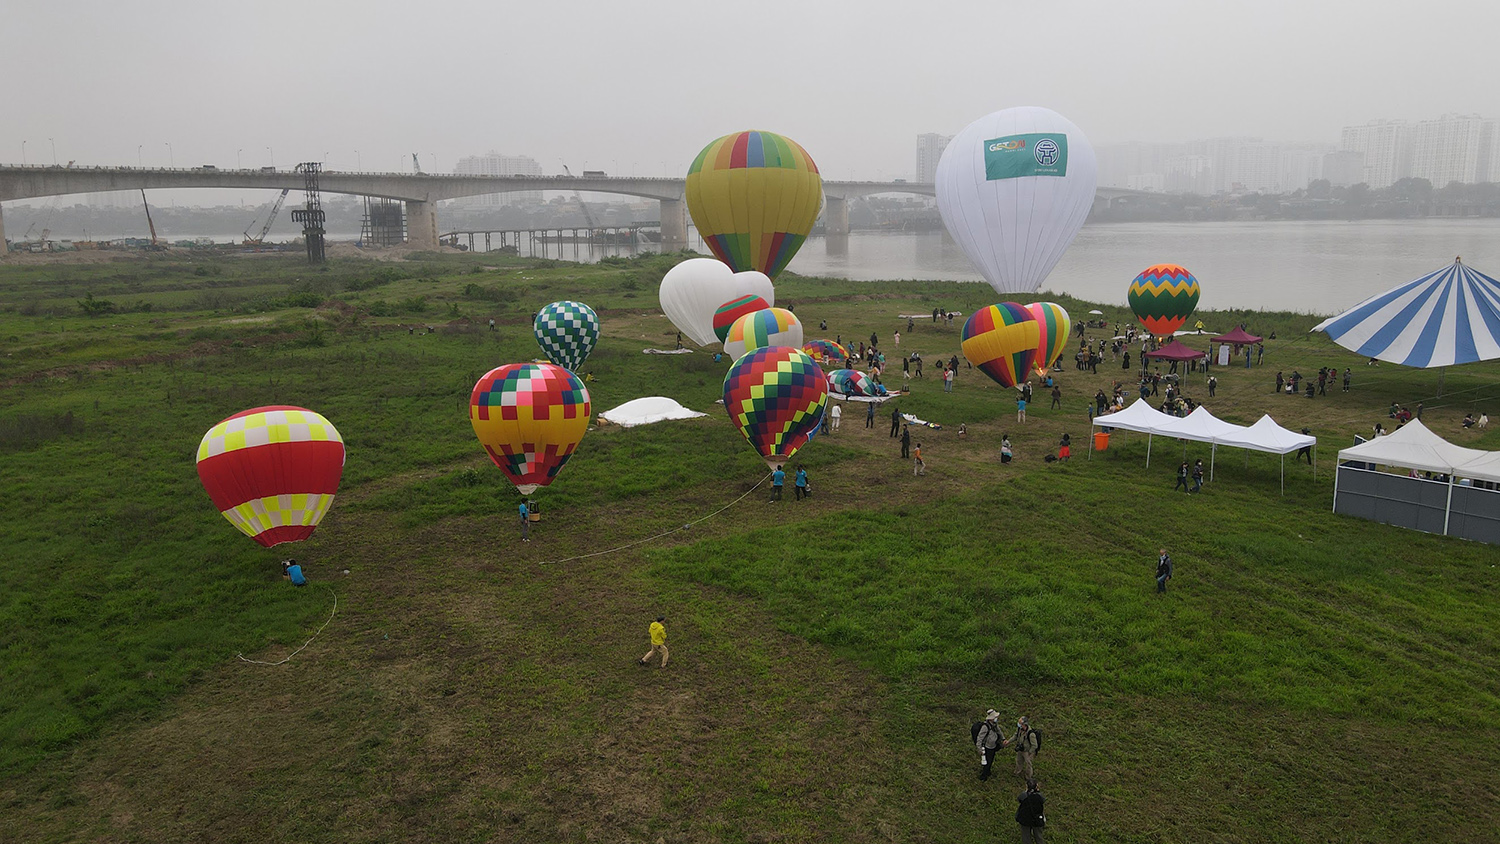 Sáng nay 25/3, tại khu vườn nhãn Long Biên ở chân cầu Vĩnh Tuy (quận Long Biên, Hà Nội) đã diễn ra ngày hội khinh khí cầu “Hà Nội muôn màu”.